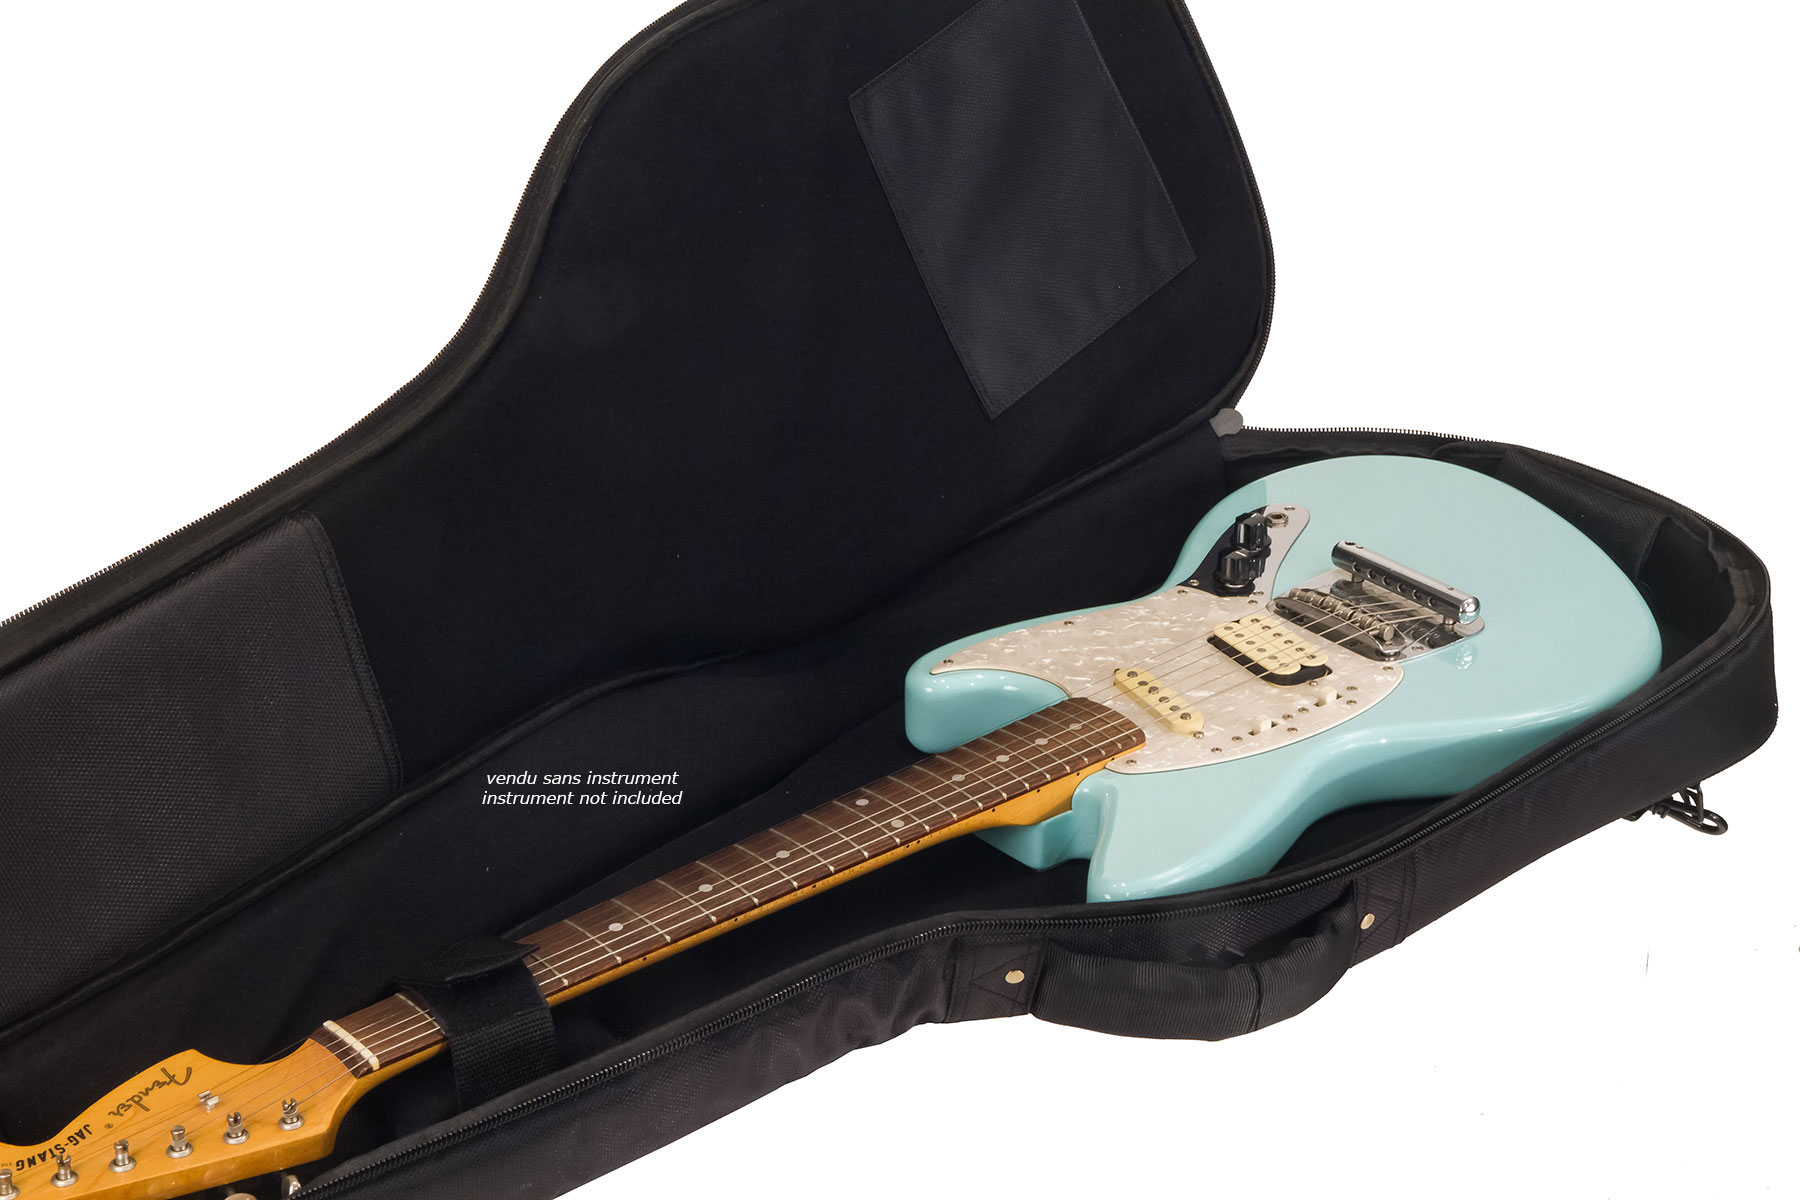 X-tone 2020 Ele-bk Light Deluxe Electric Guitar Bag Black (2083) - Tas voor Elektrische Gitaar - Variation 5